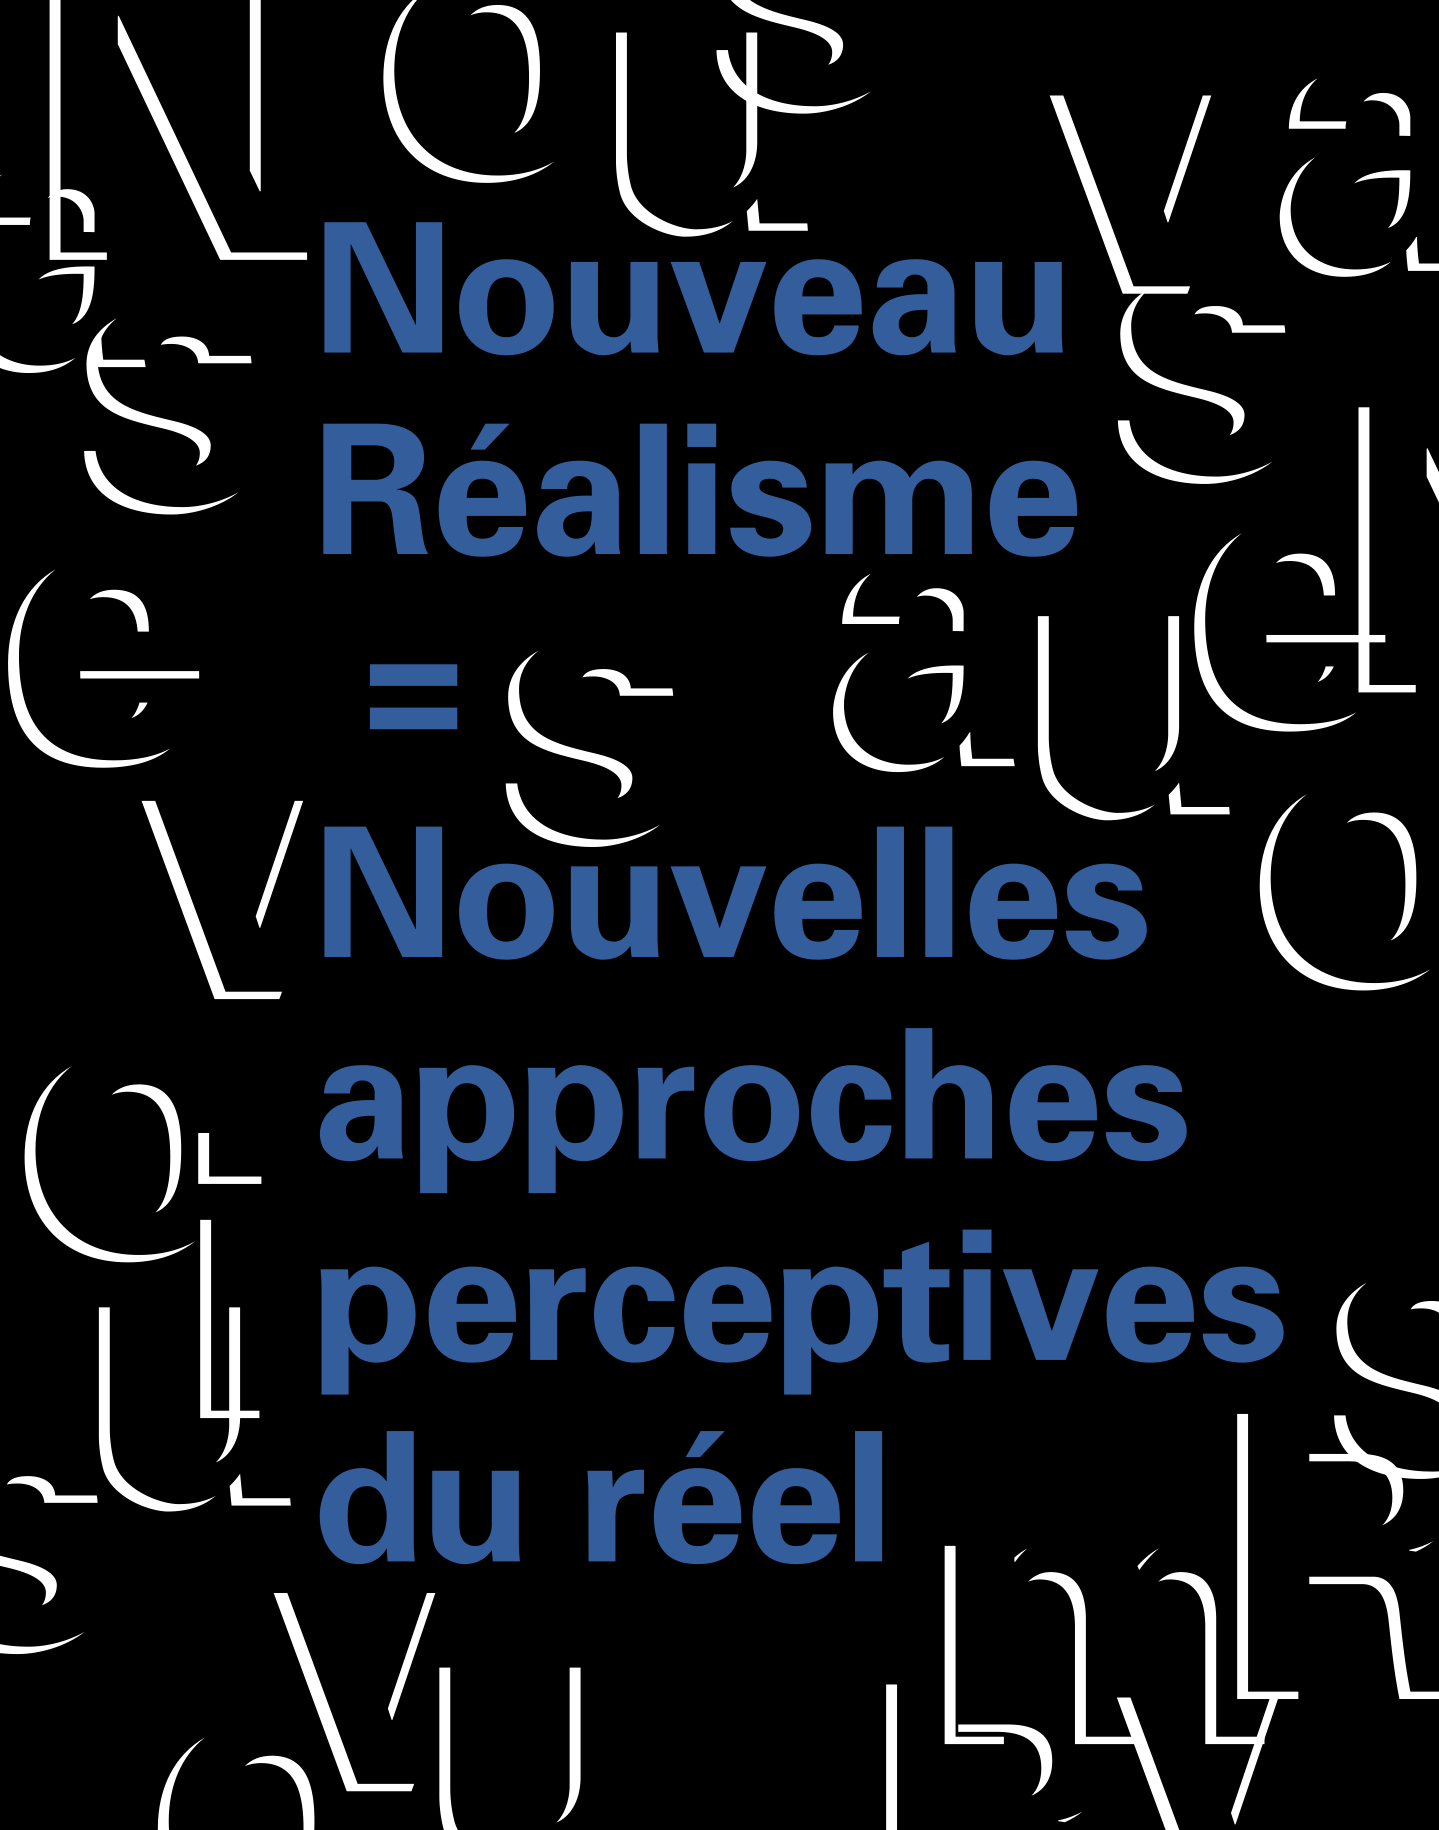 Nouveau Réalisme = Nouvelles approches perceptives du réel - Galerie Georges-Philippe & Nathalie Vallois